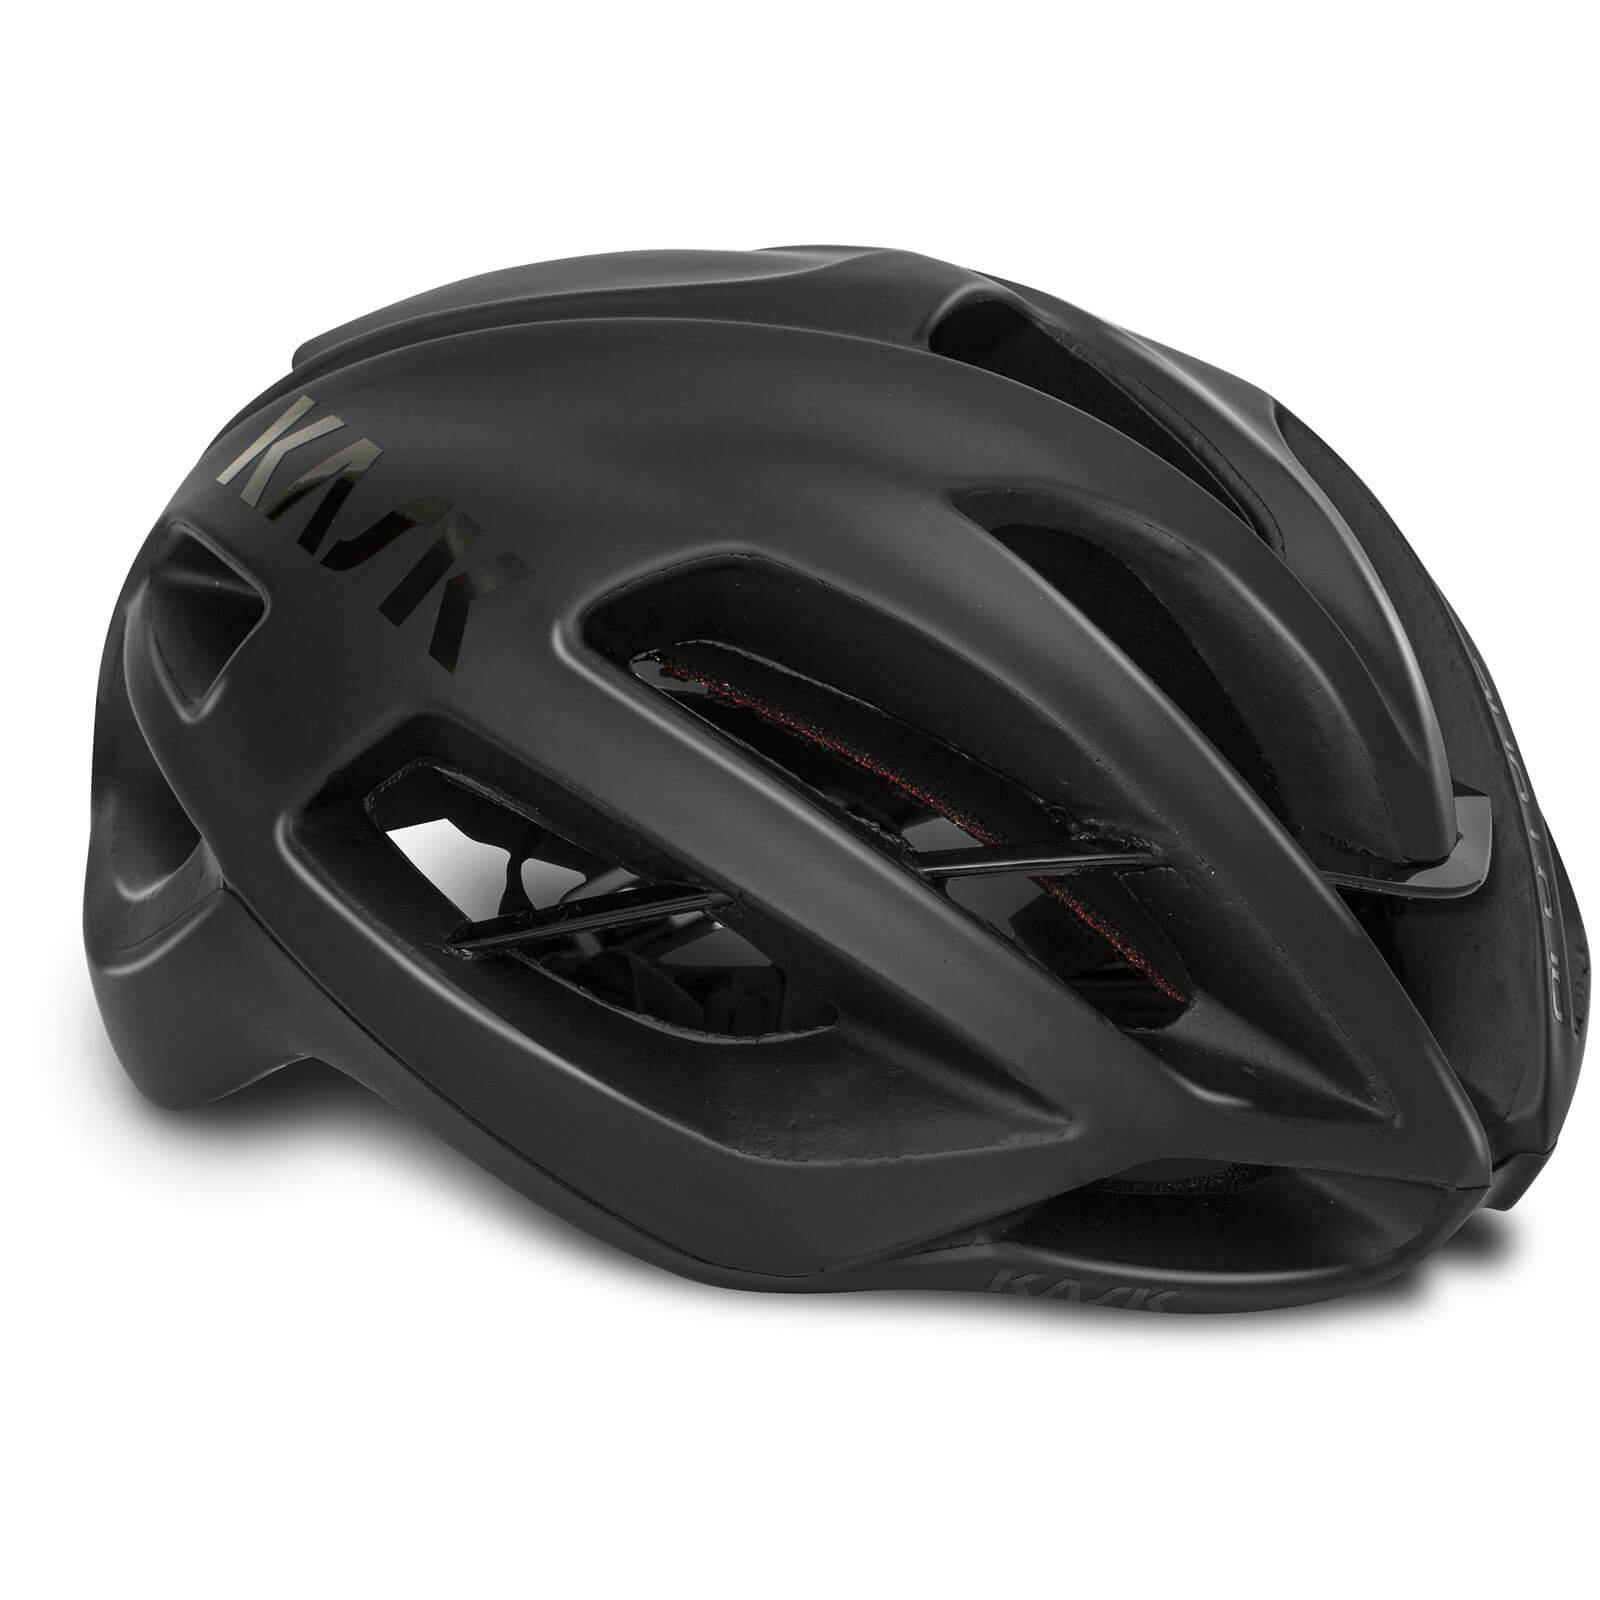 Image of Kask Protone WG11 Road Helmet - M - Matte Black